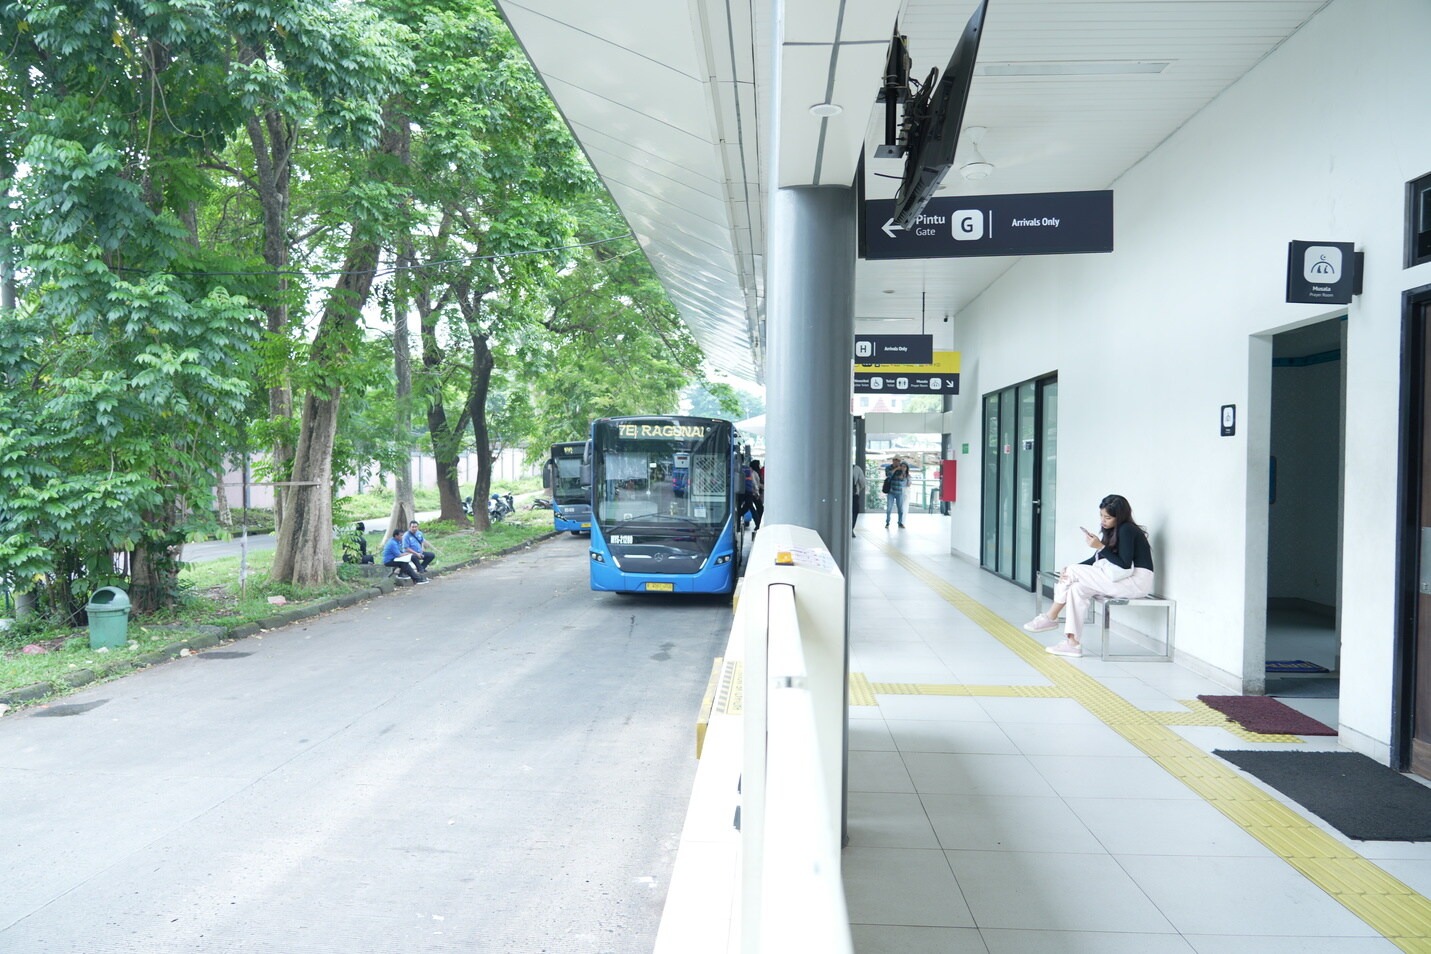 Rute Transjakarta dan JakLingko mengalami penyesuaian. Buat kamu pengguna setia moda transportasi publik ini, yuk cek rute terkininya! 